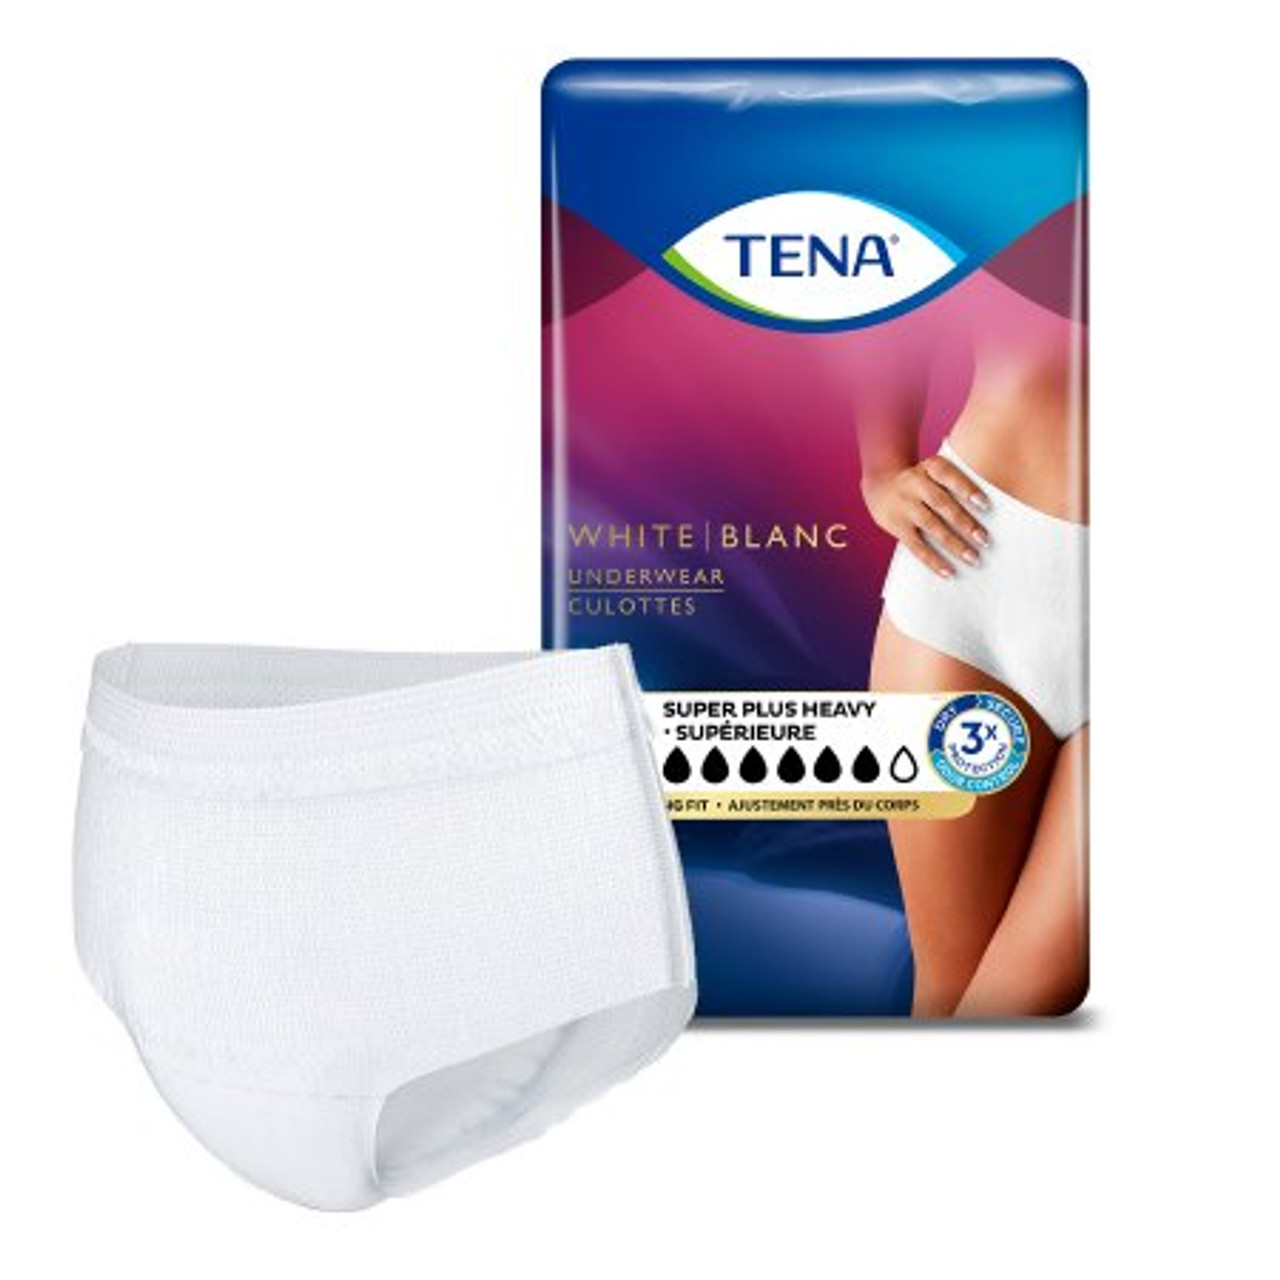 TENA Women Protective Pull On Underwear - Heavy Absorbency